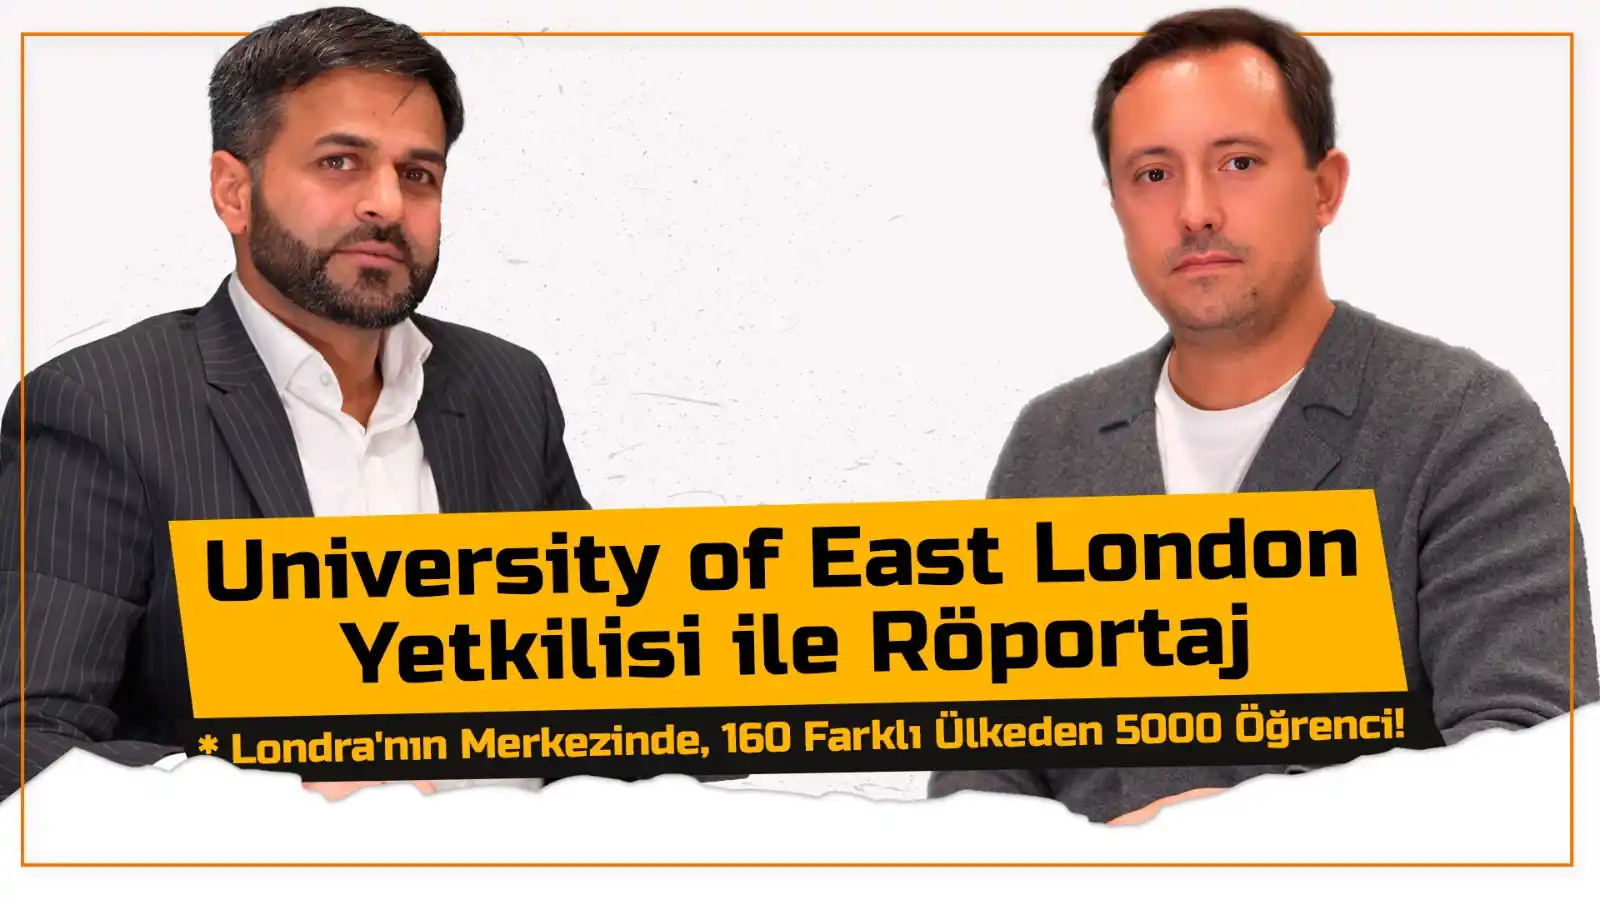 University of East London Yetkilisi ile Röportaj